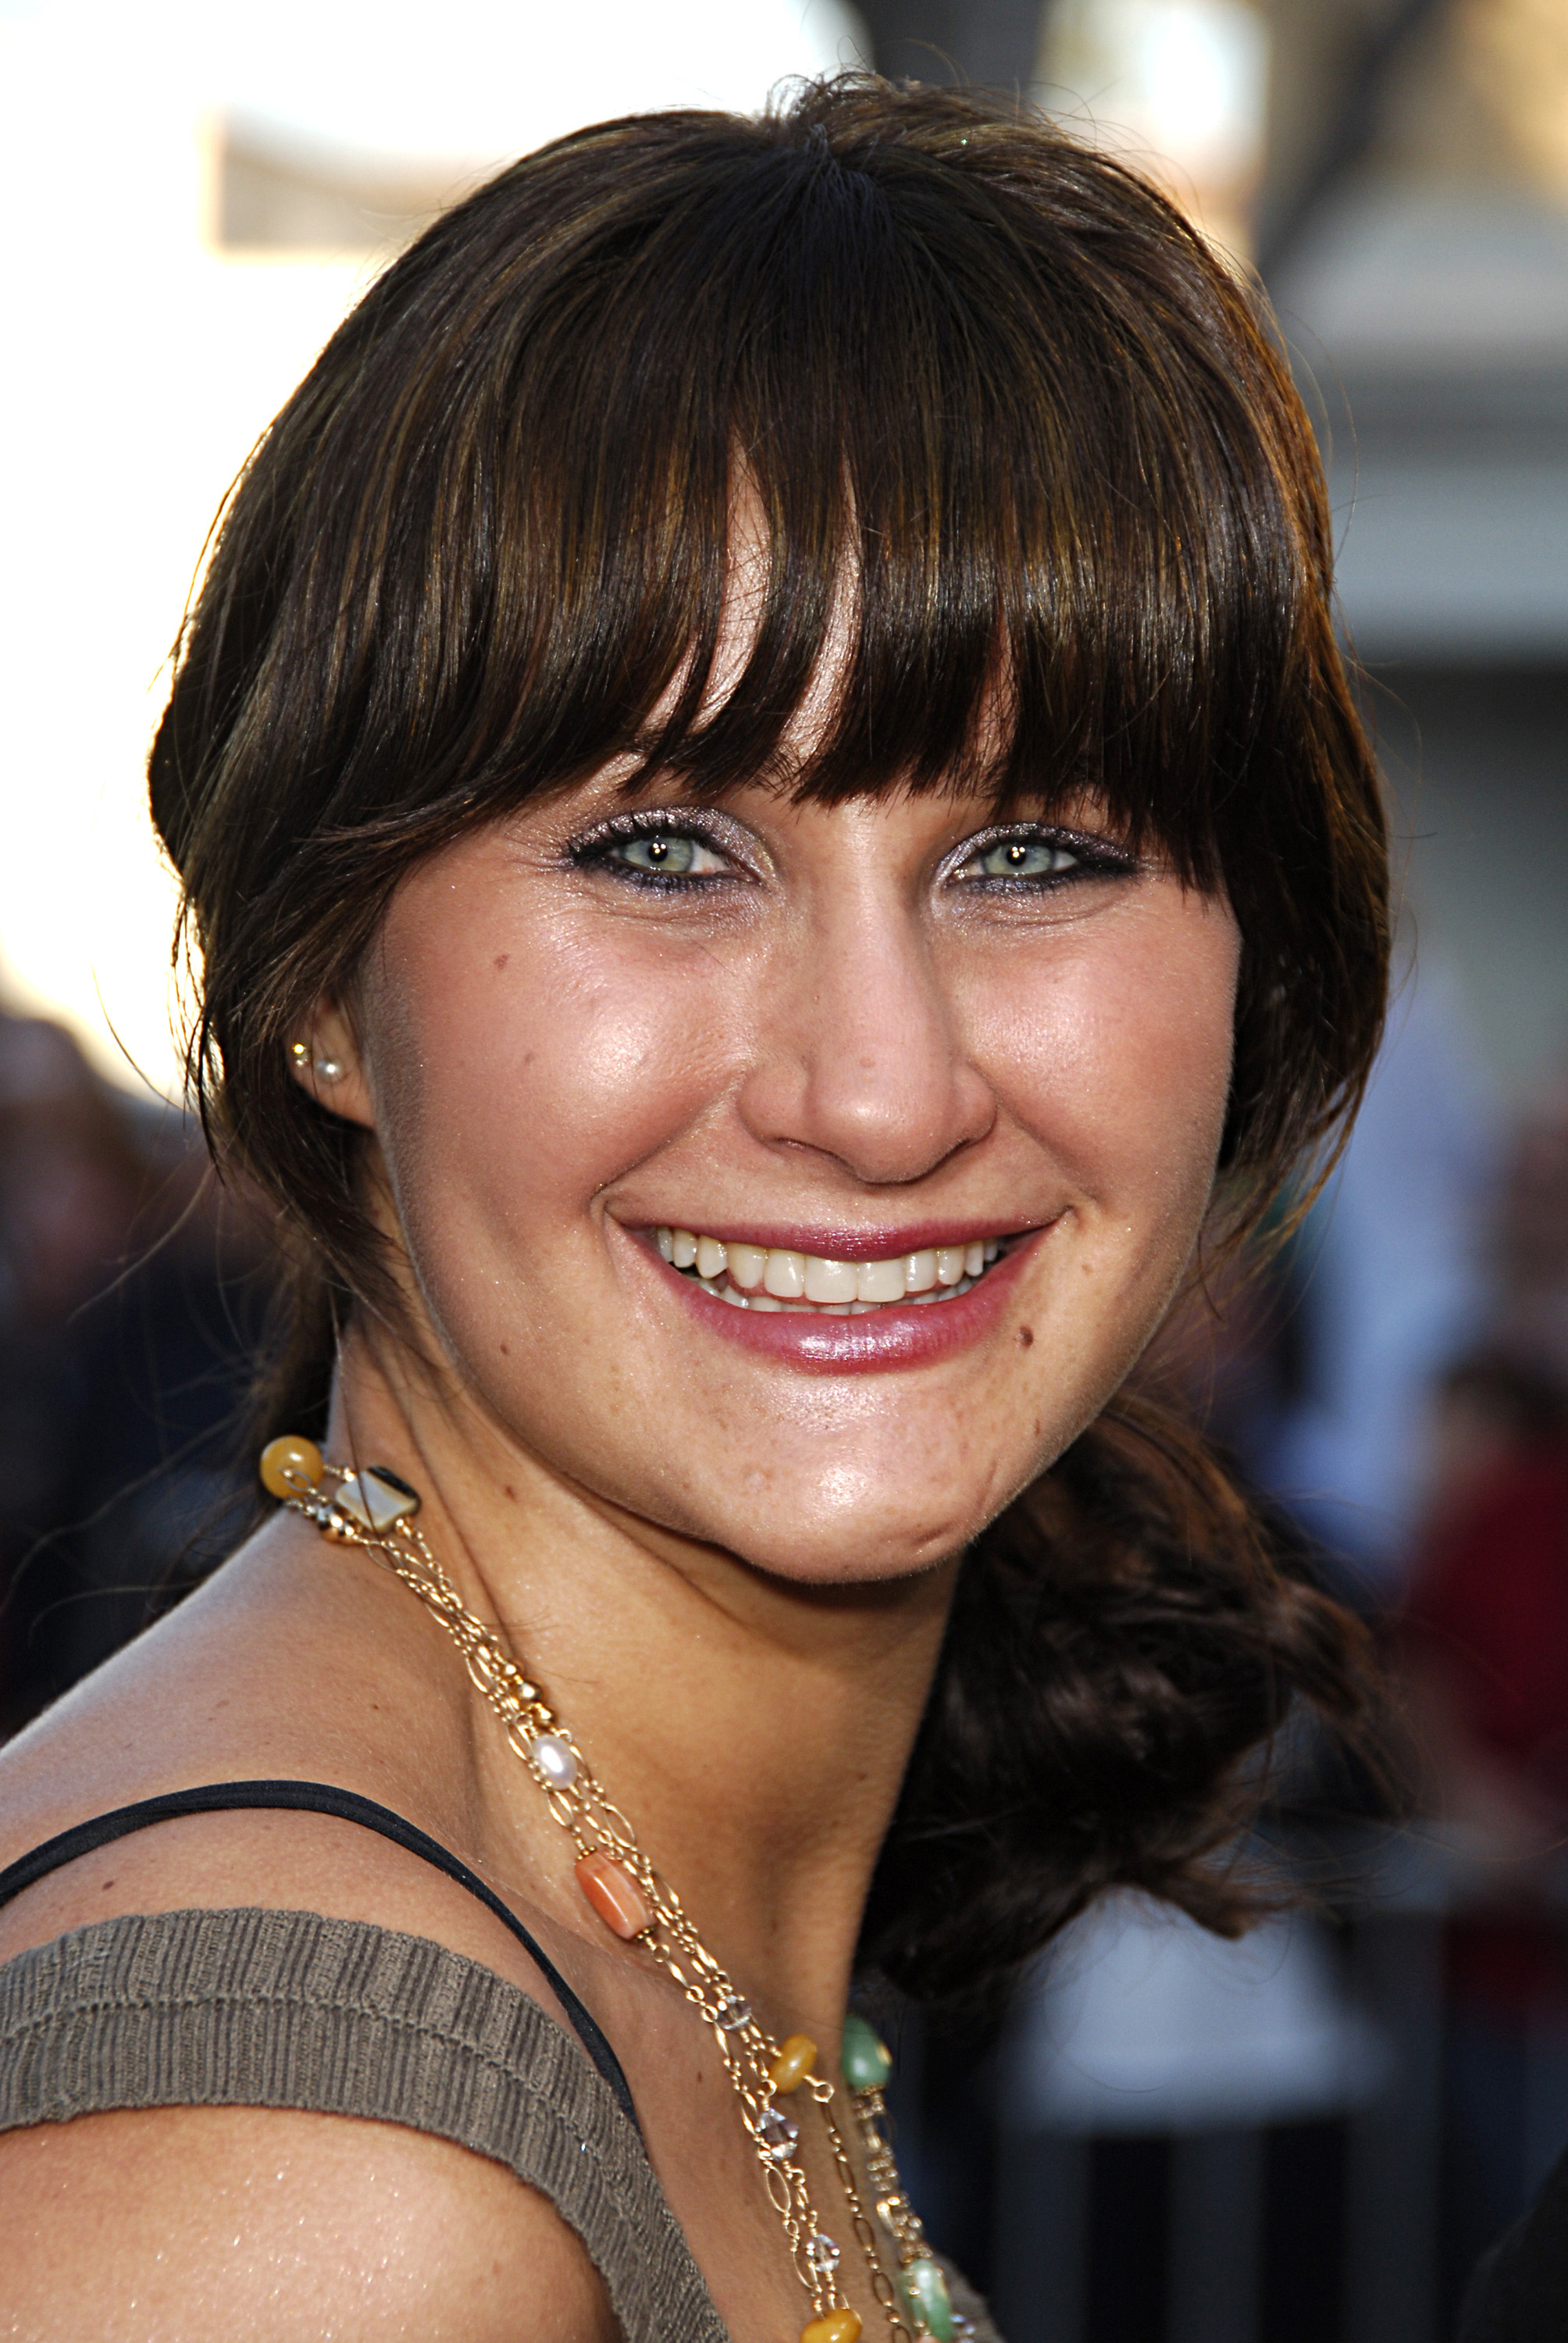 Jillian Bynes arrive à la première de "La Rupture" à Los Angeles à Westwood, Californie. | Source : Getty Images